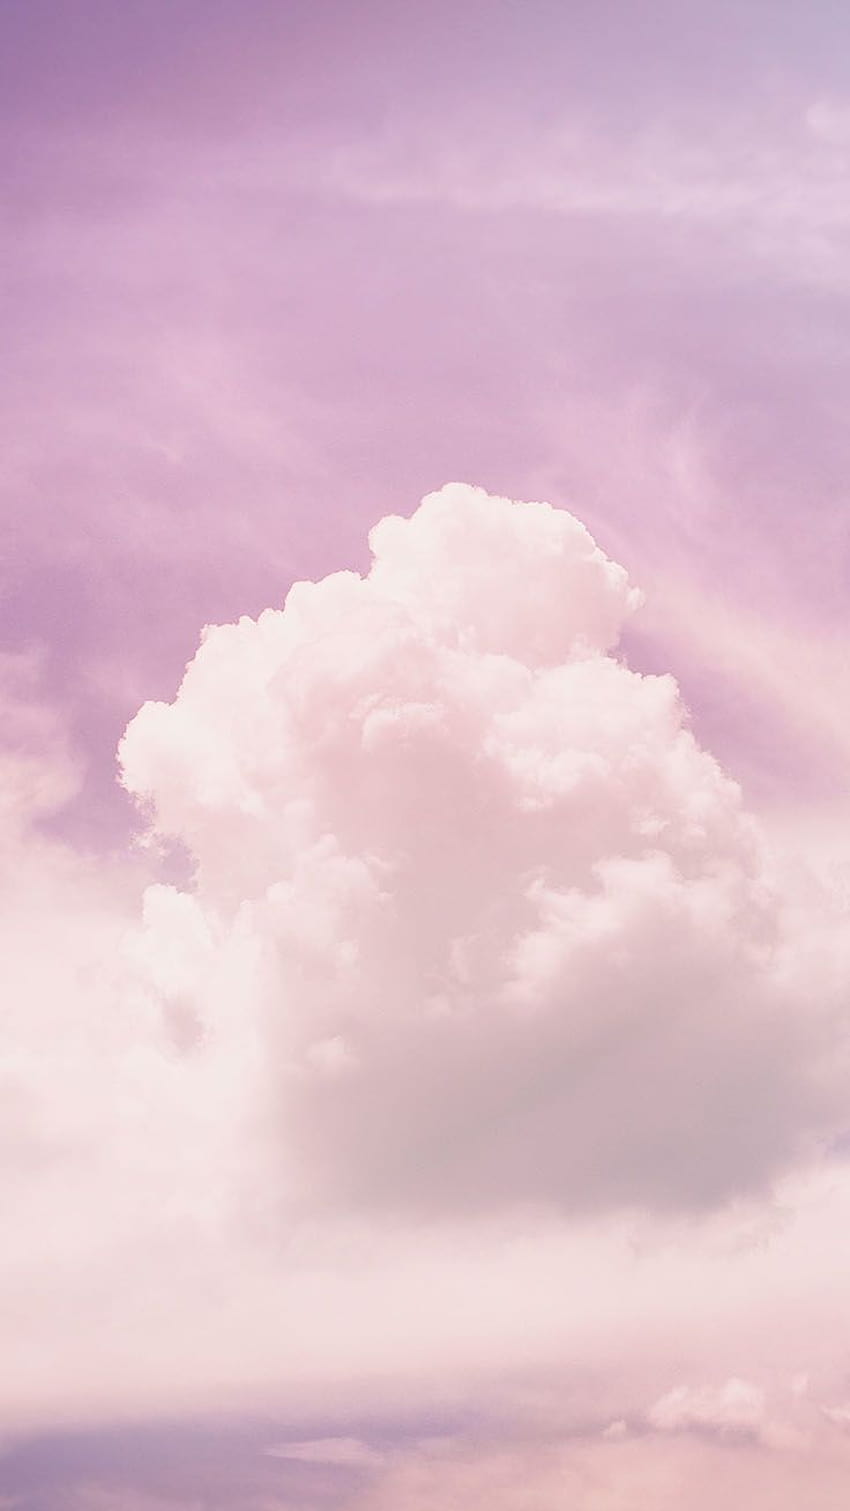 22 iPhone Untuk Orang Yang Hidup Di Cloud 9, iphone awan ungu merah jambu wallpaper ponsel HD